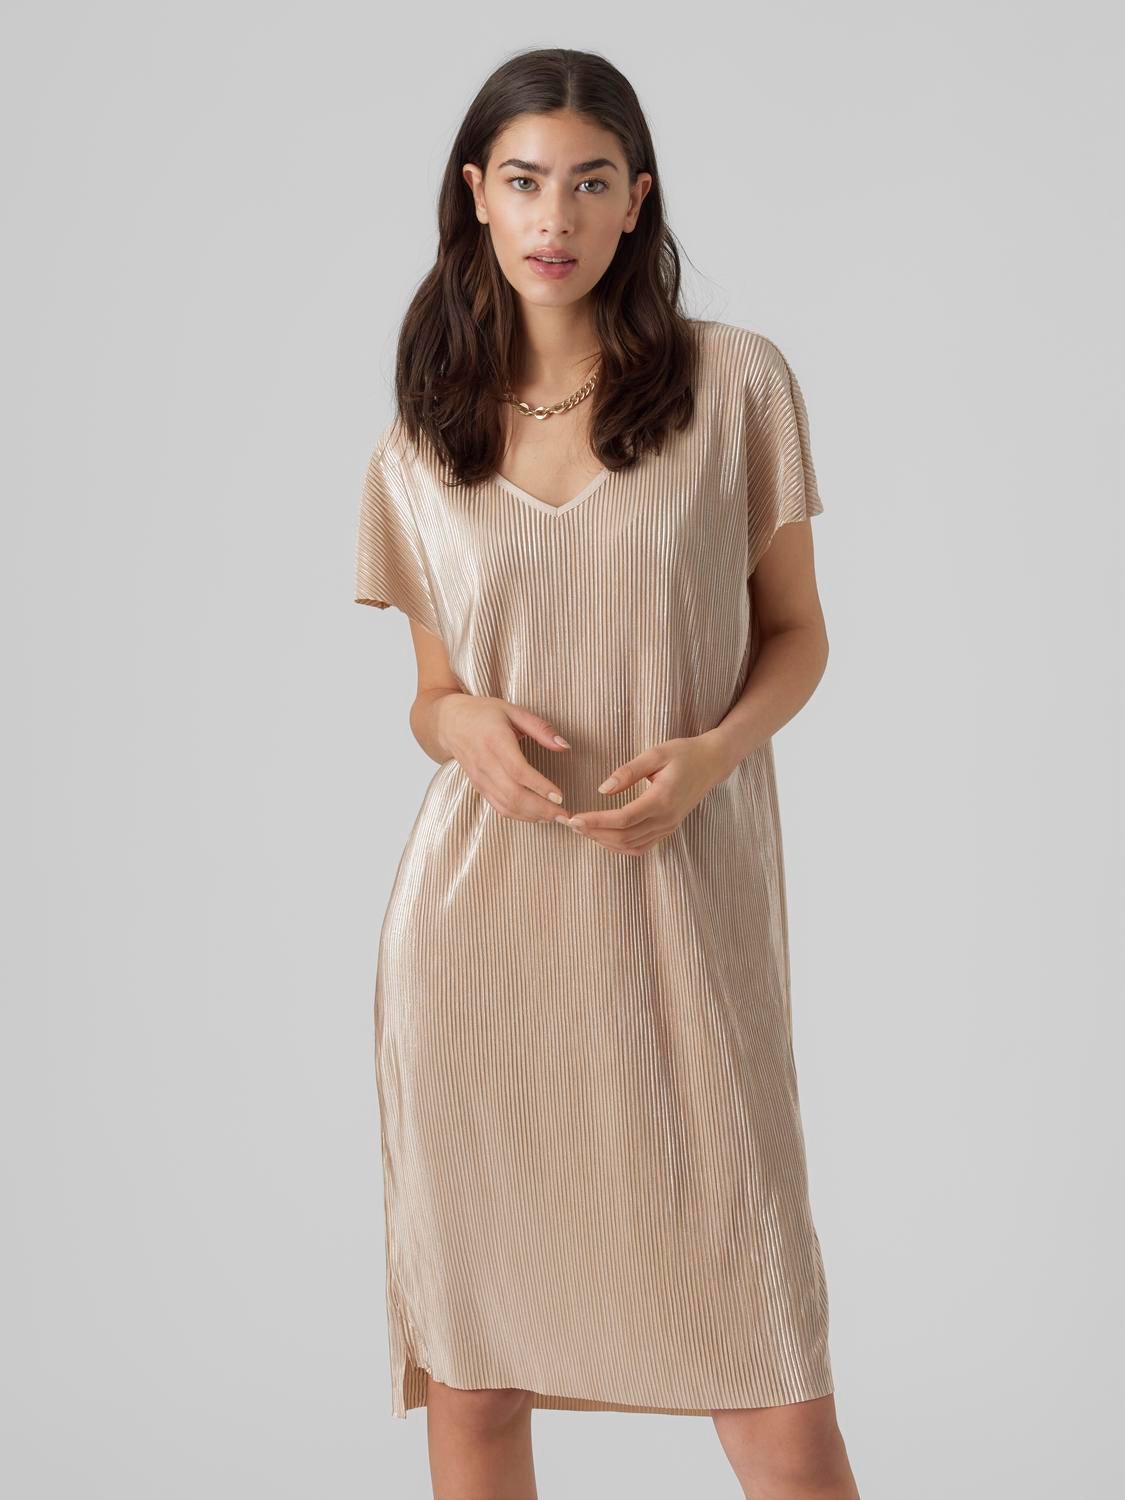 Productie Schaar Mail Korte jurk | Midden Grijs | Vero Moda®